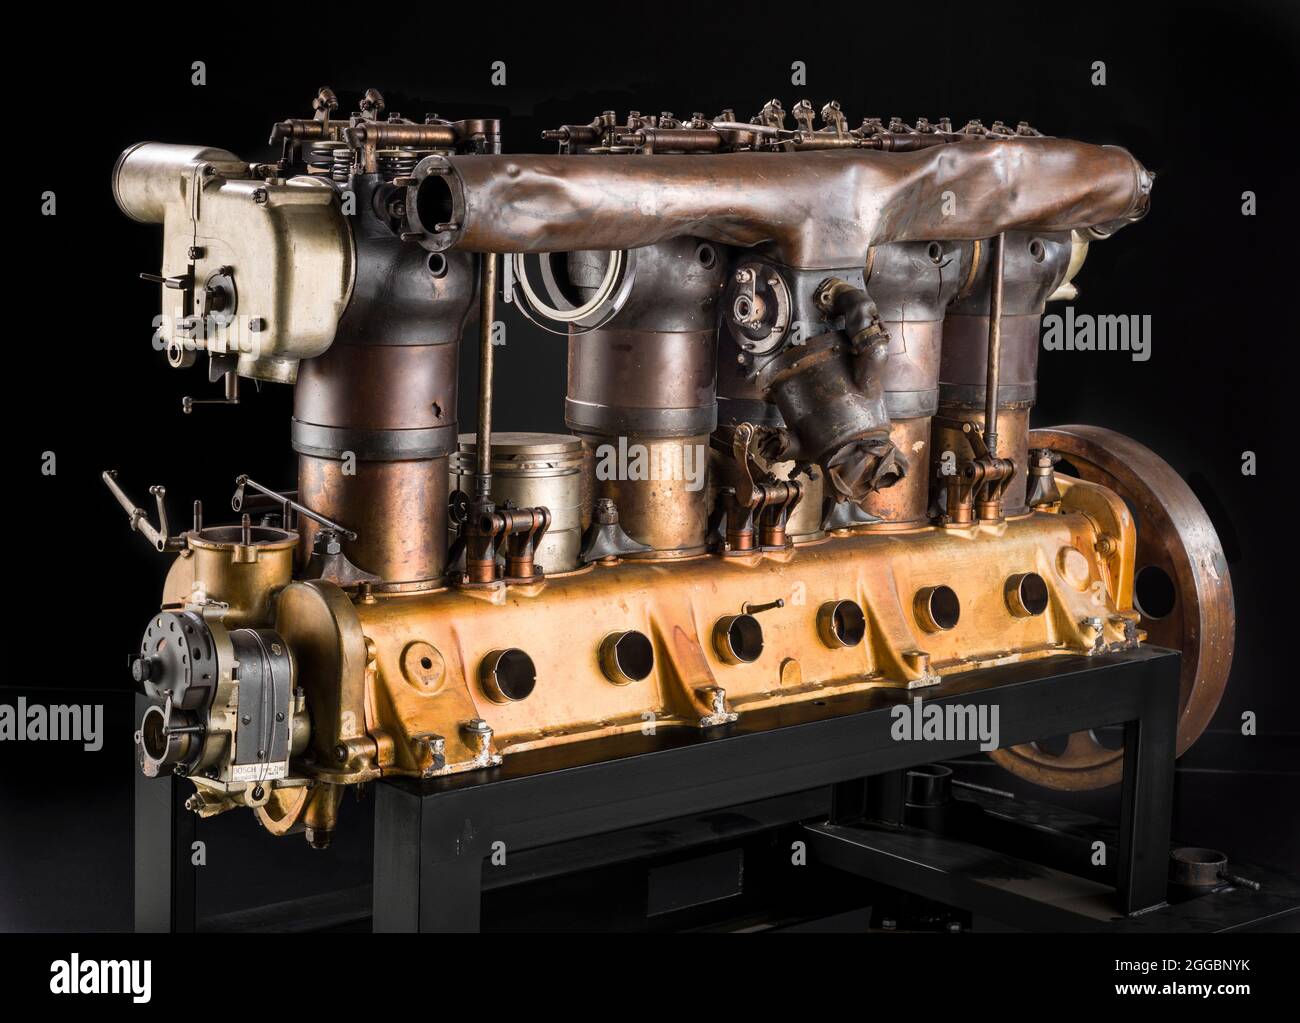 Ce moteur de la première Guerre mondiale, construit par l'Allemagne&#x2019;s Maybach, était du type qui a alimenté les avions Zeppelin, Schutte-Lanz, et Parsewal ou des avions tels que le Rumpler C4 et C5. Sans mesures de l'artefact, il n'est pas possible de déterminer si c'est la conception en ligne à six cylindres refroidis par eau, évaluée à 149 kW (200 shp) qui a alimenté les avions, ou le dérivé de ce moteur, connu sous le nom de Maybach de 224 kW (300 shp), qui a alimenté les avions. L'artefact est fortement endommagé. Il est probable qu'il ait été retiré d'un navire en aval pour analyse technique. Ce moteur faisait partie de Banque D'Images